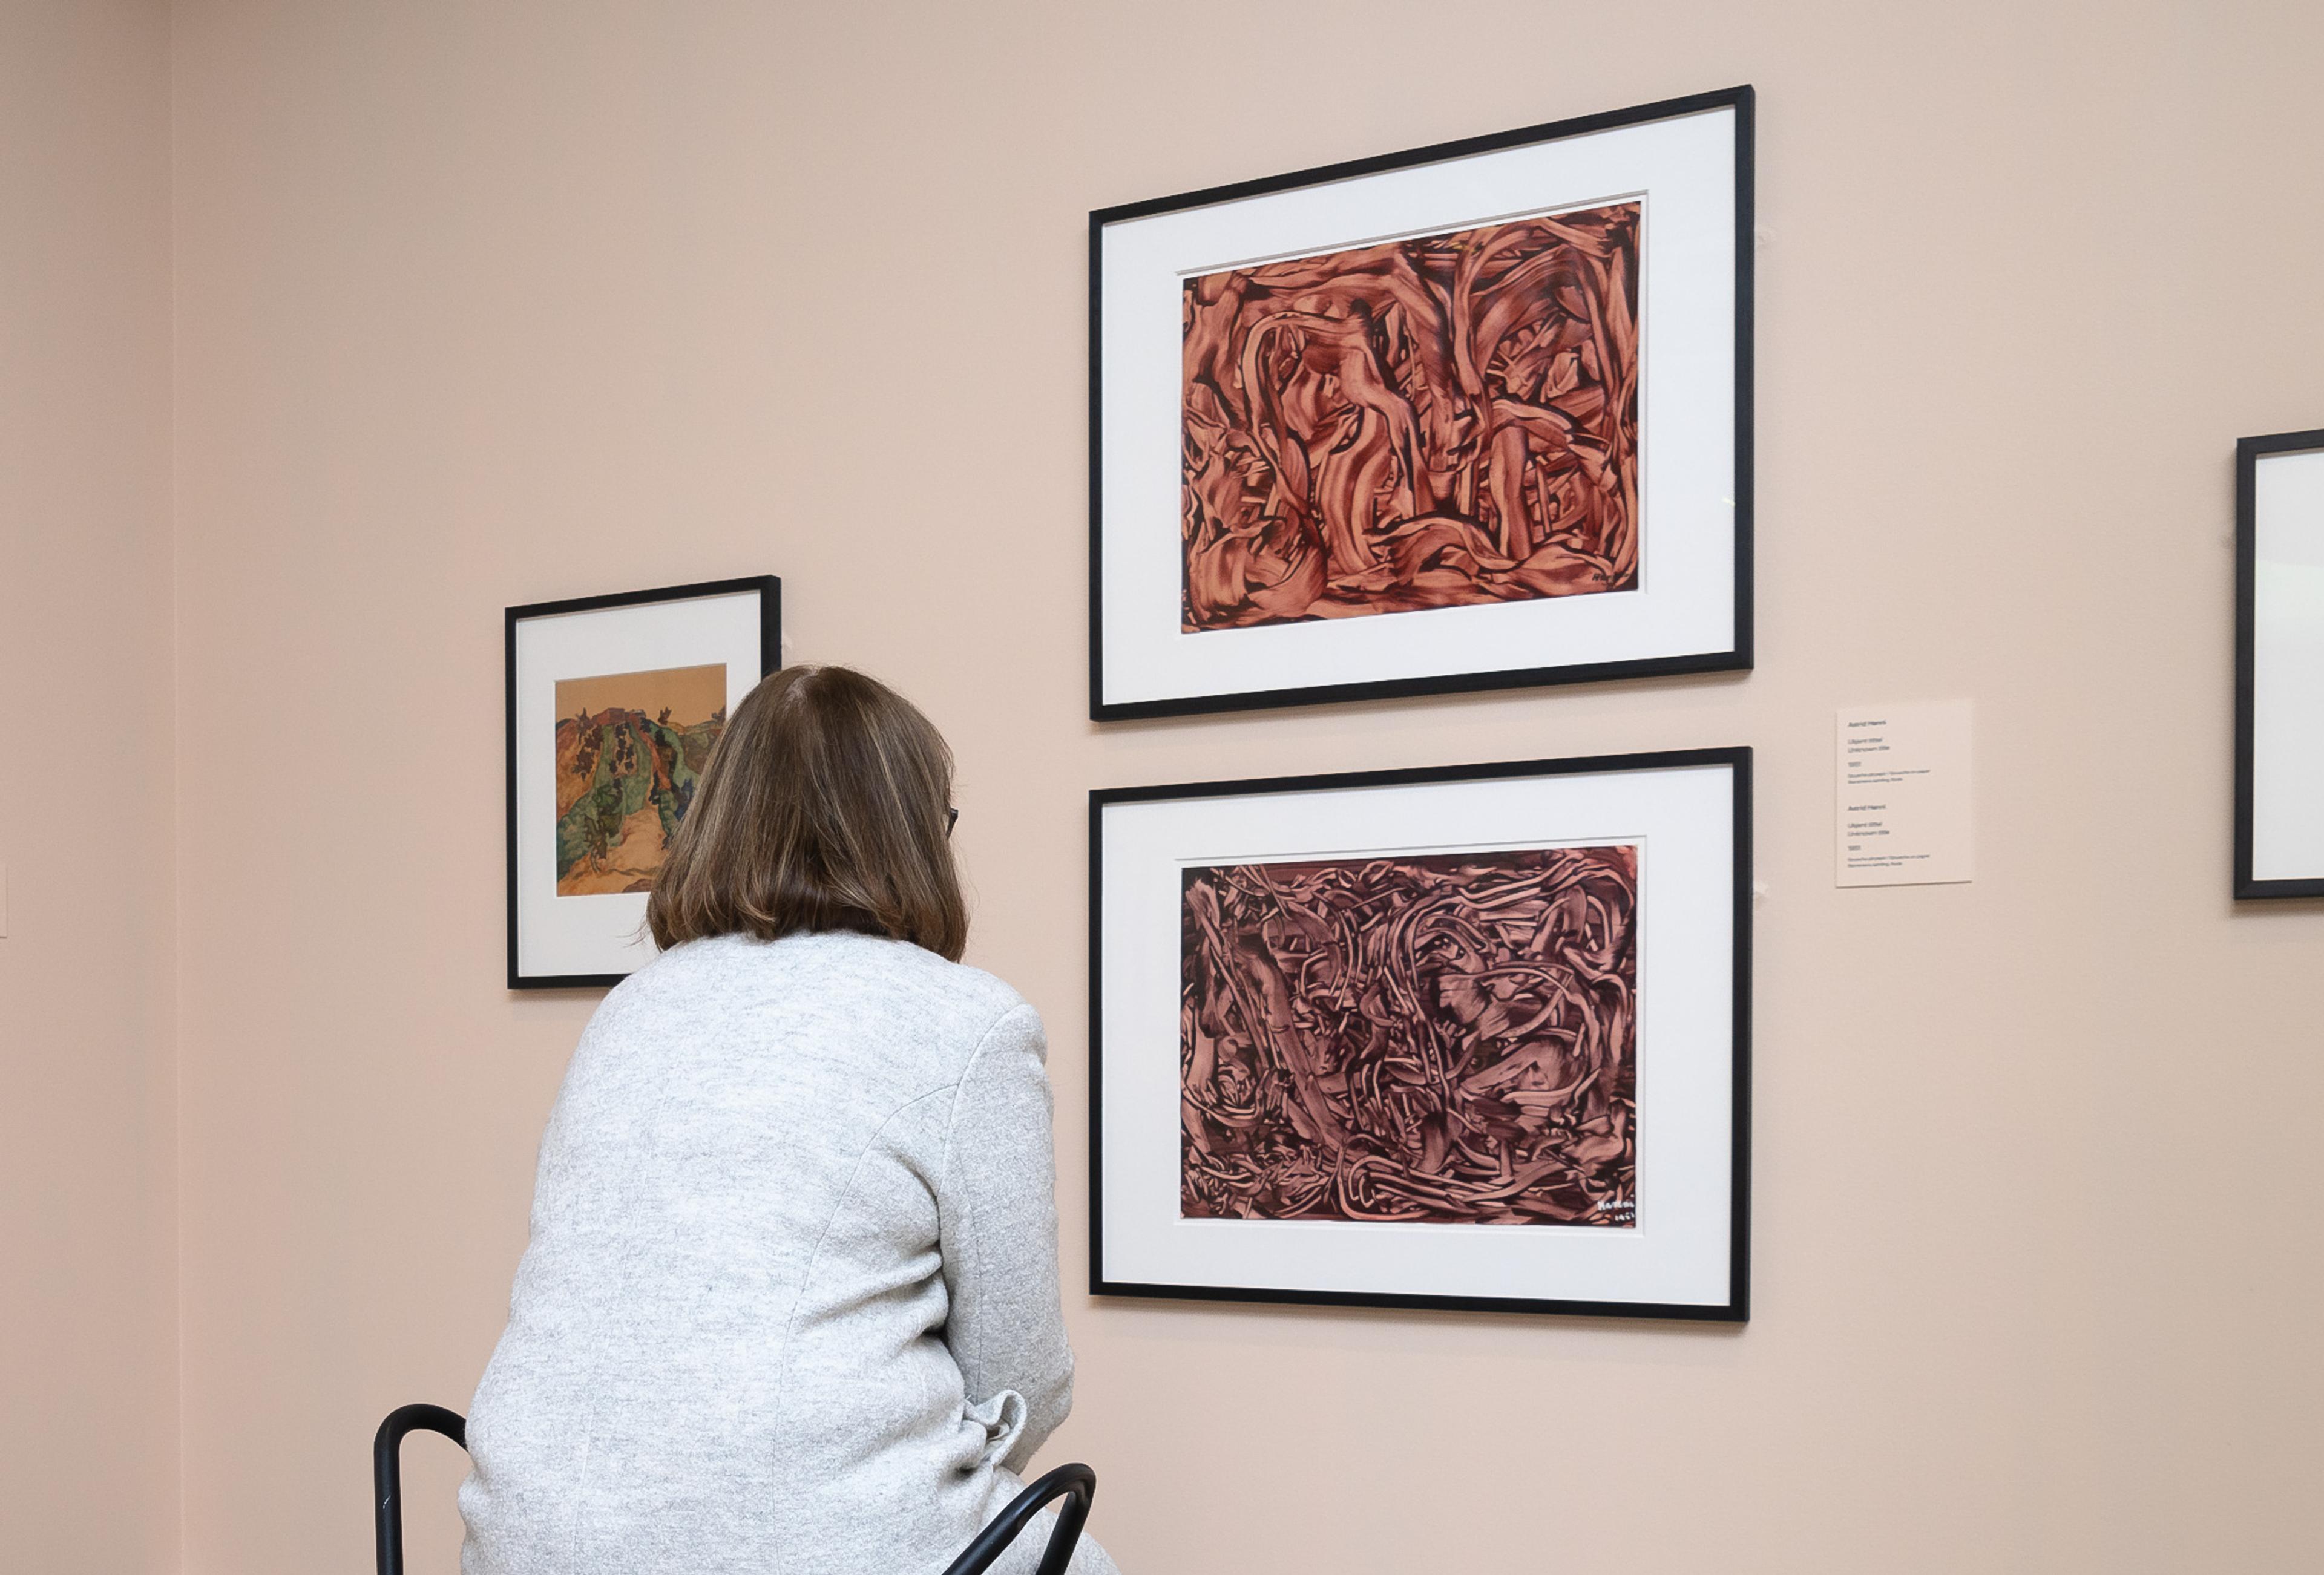 En kvinne sitter på en stol og ser på to abstrakte malerier